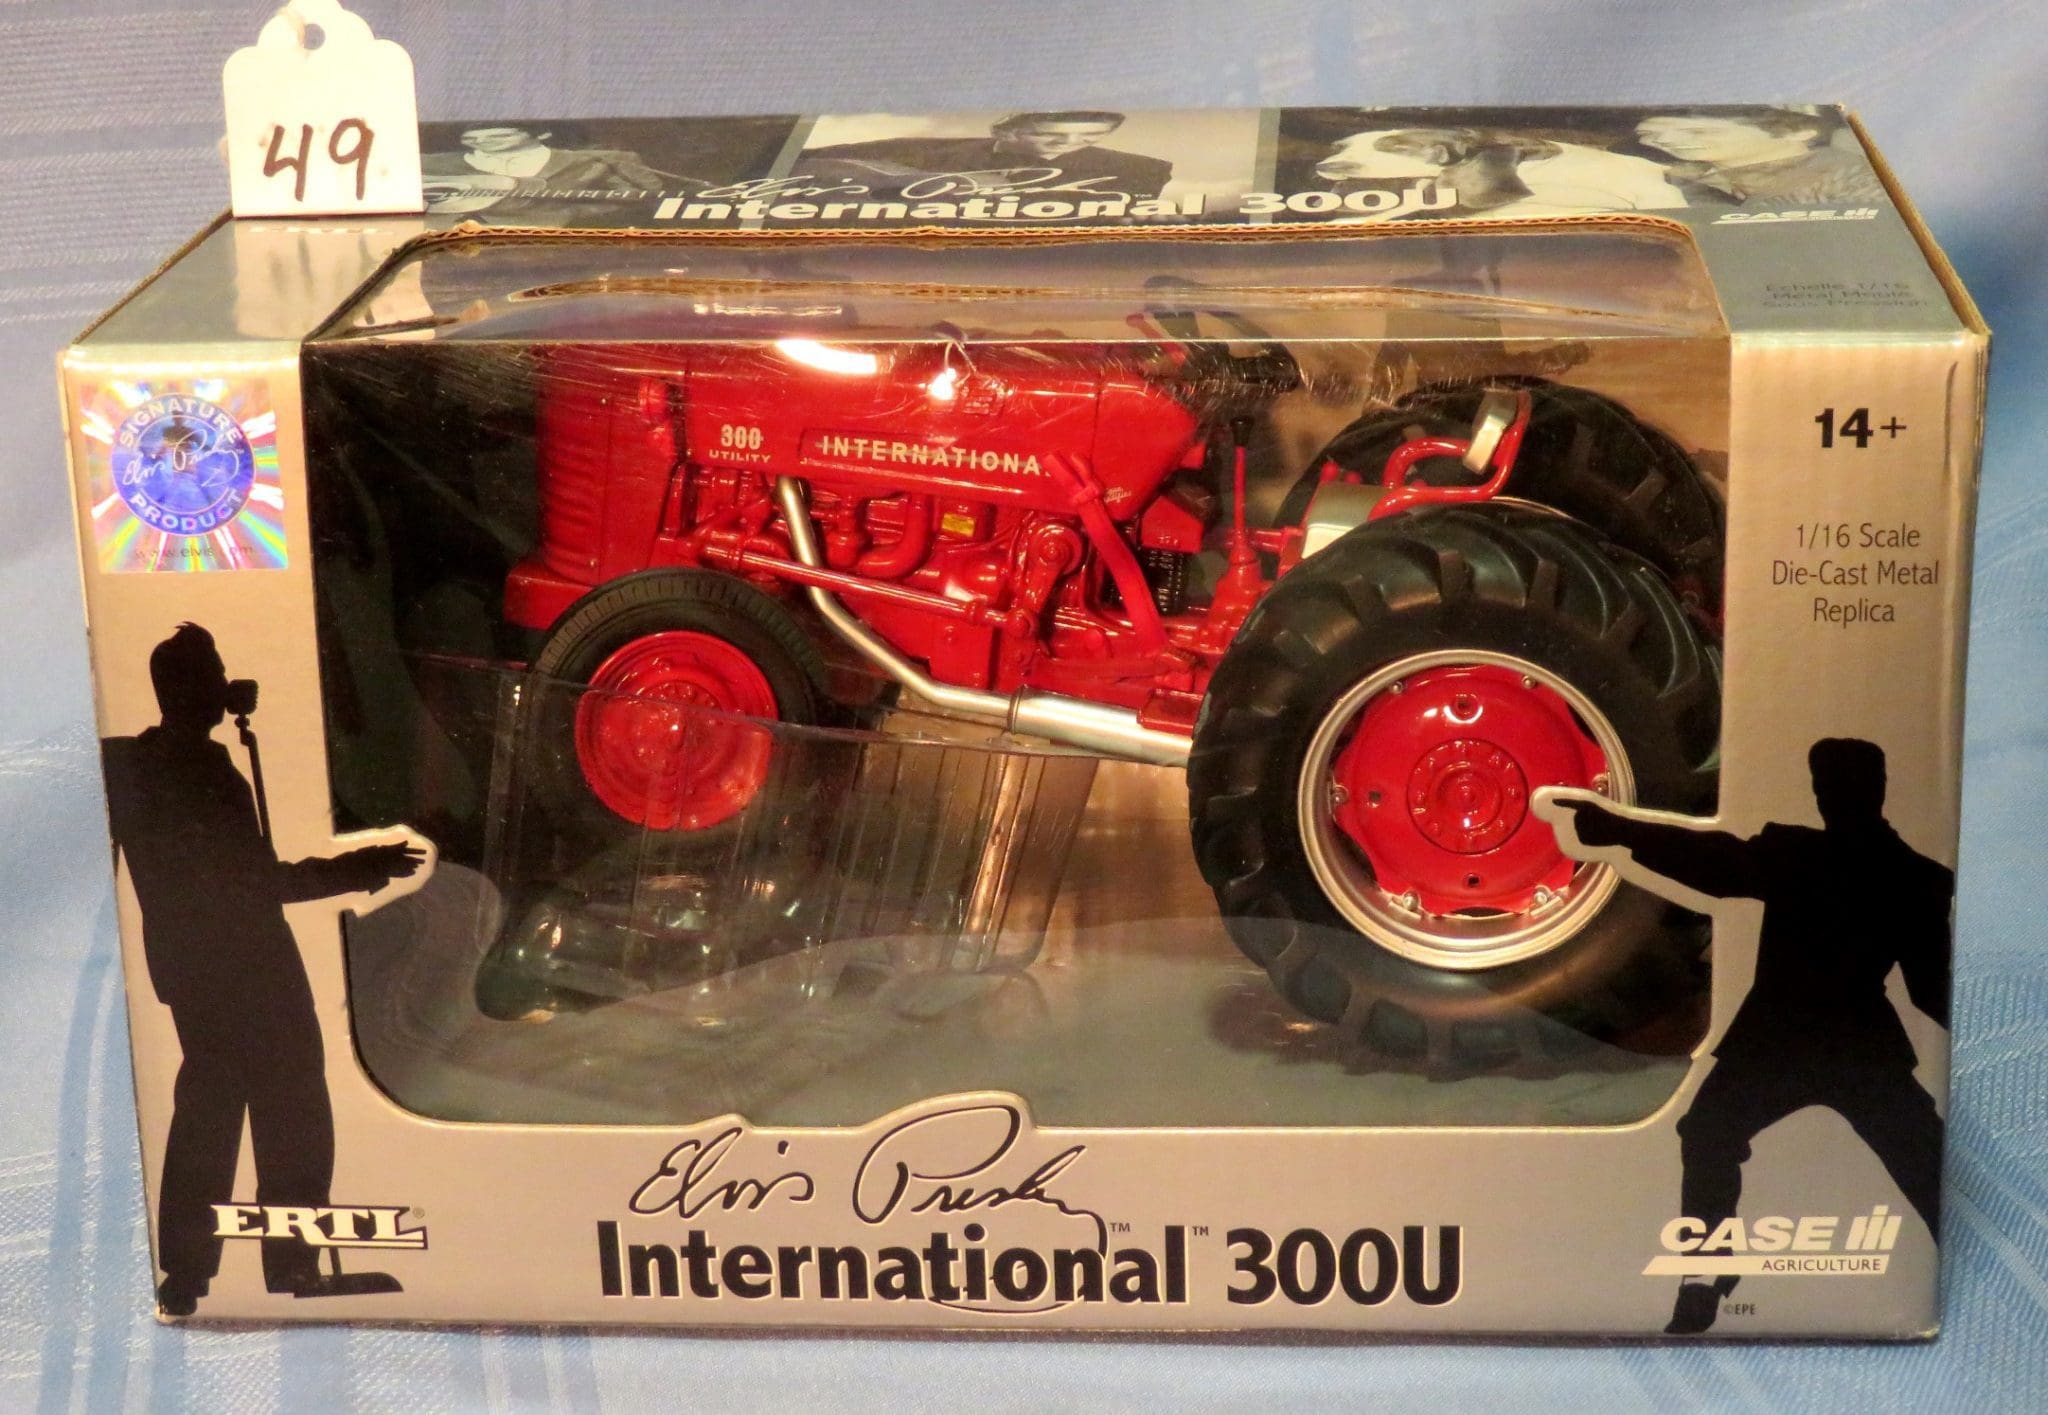 for sale online Ertl 1/16 Scale Case International Harvester 300u Tractor 